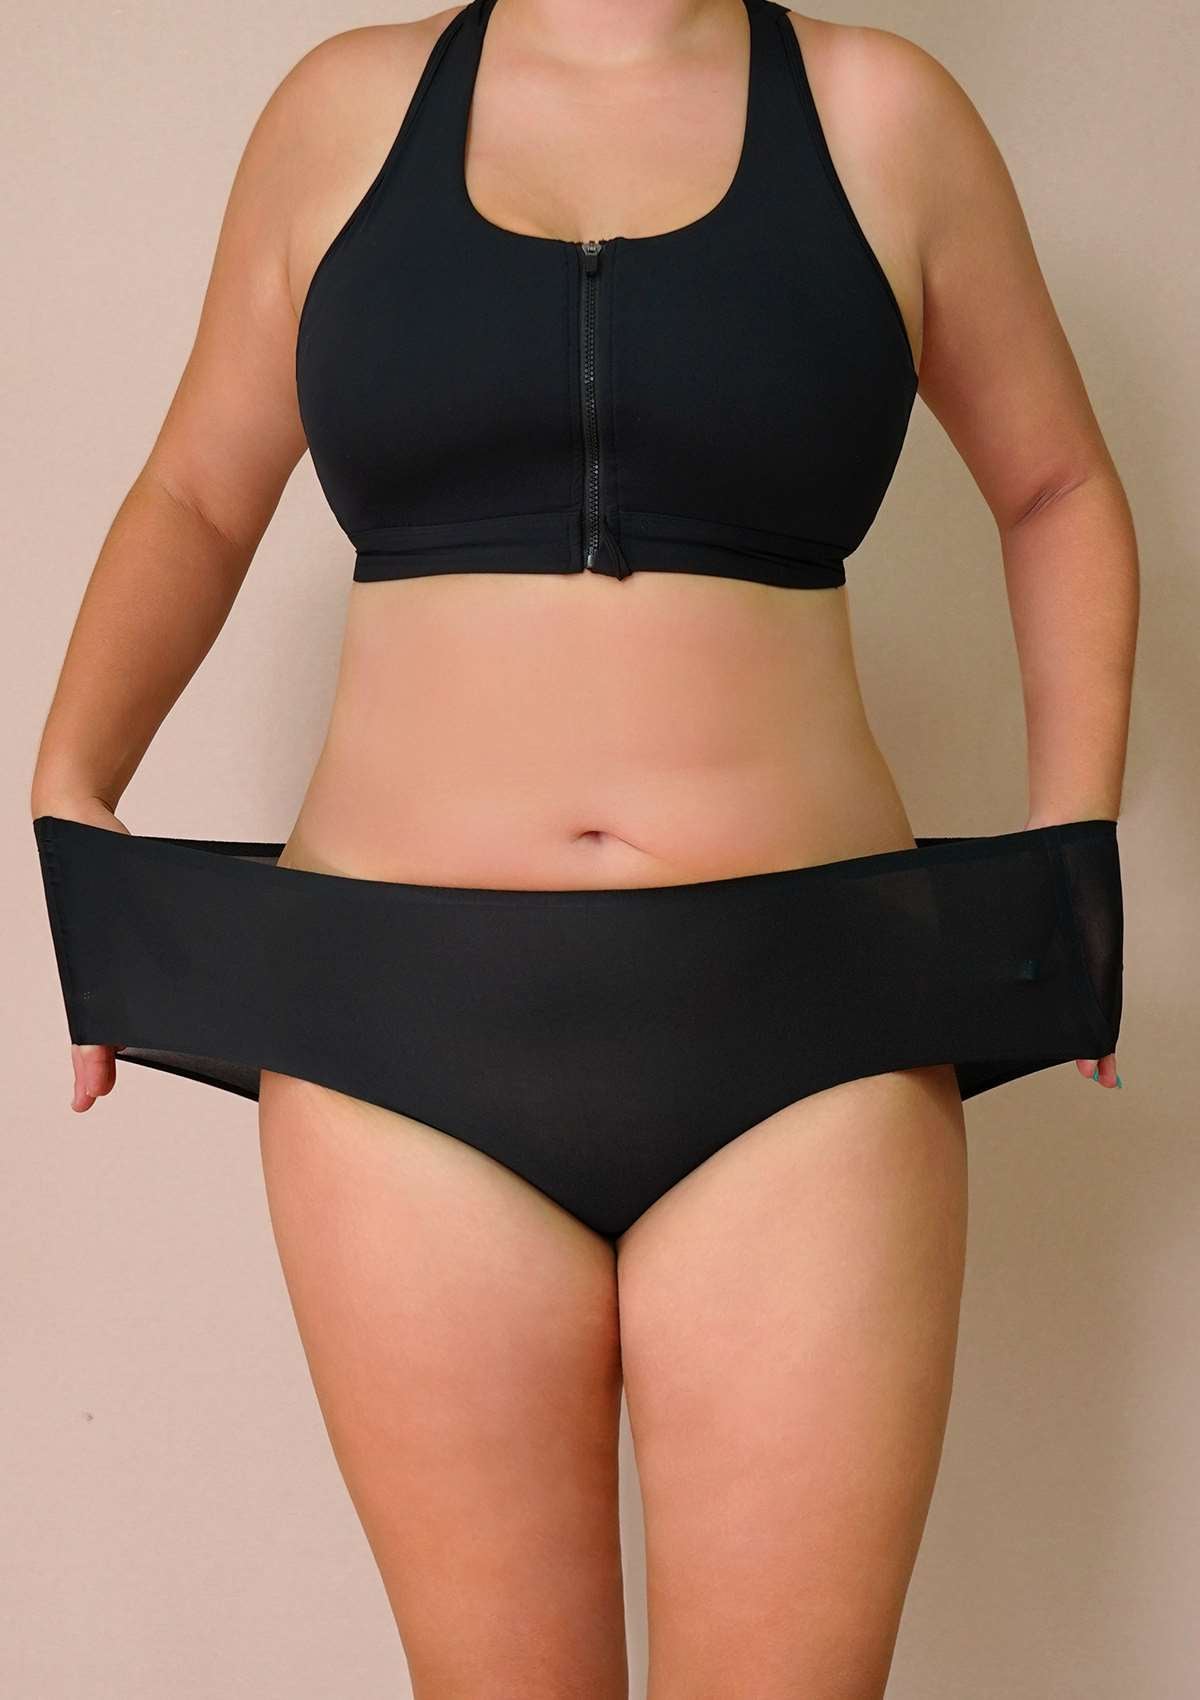 HSIA FlexiFit Soft Stretch Seamless Brief Underwear Bundle - 3 Packs/$15 / 4XL-6XL / Black+Peach Beige+Gray